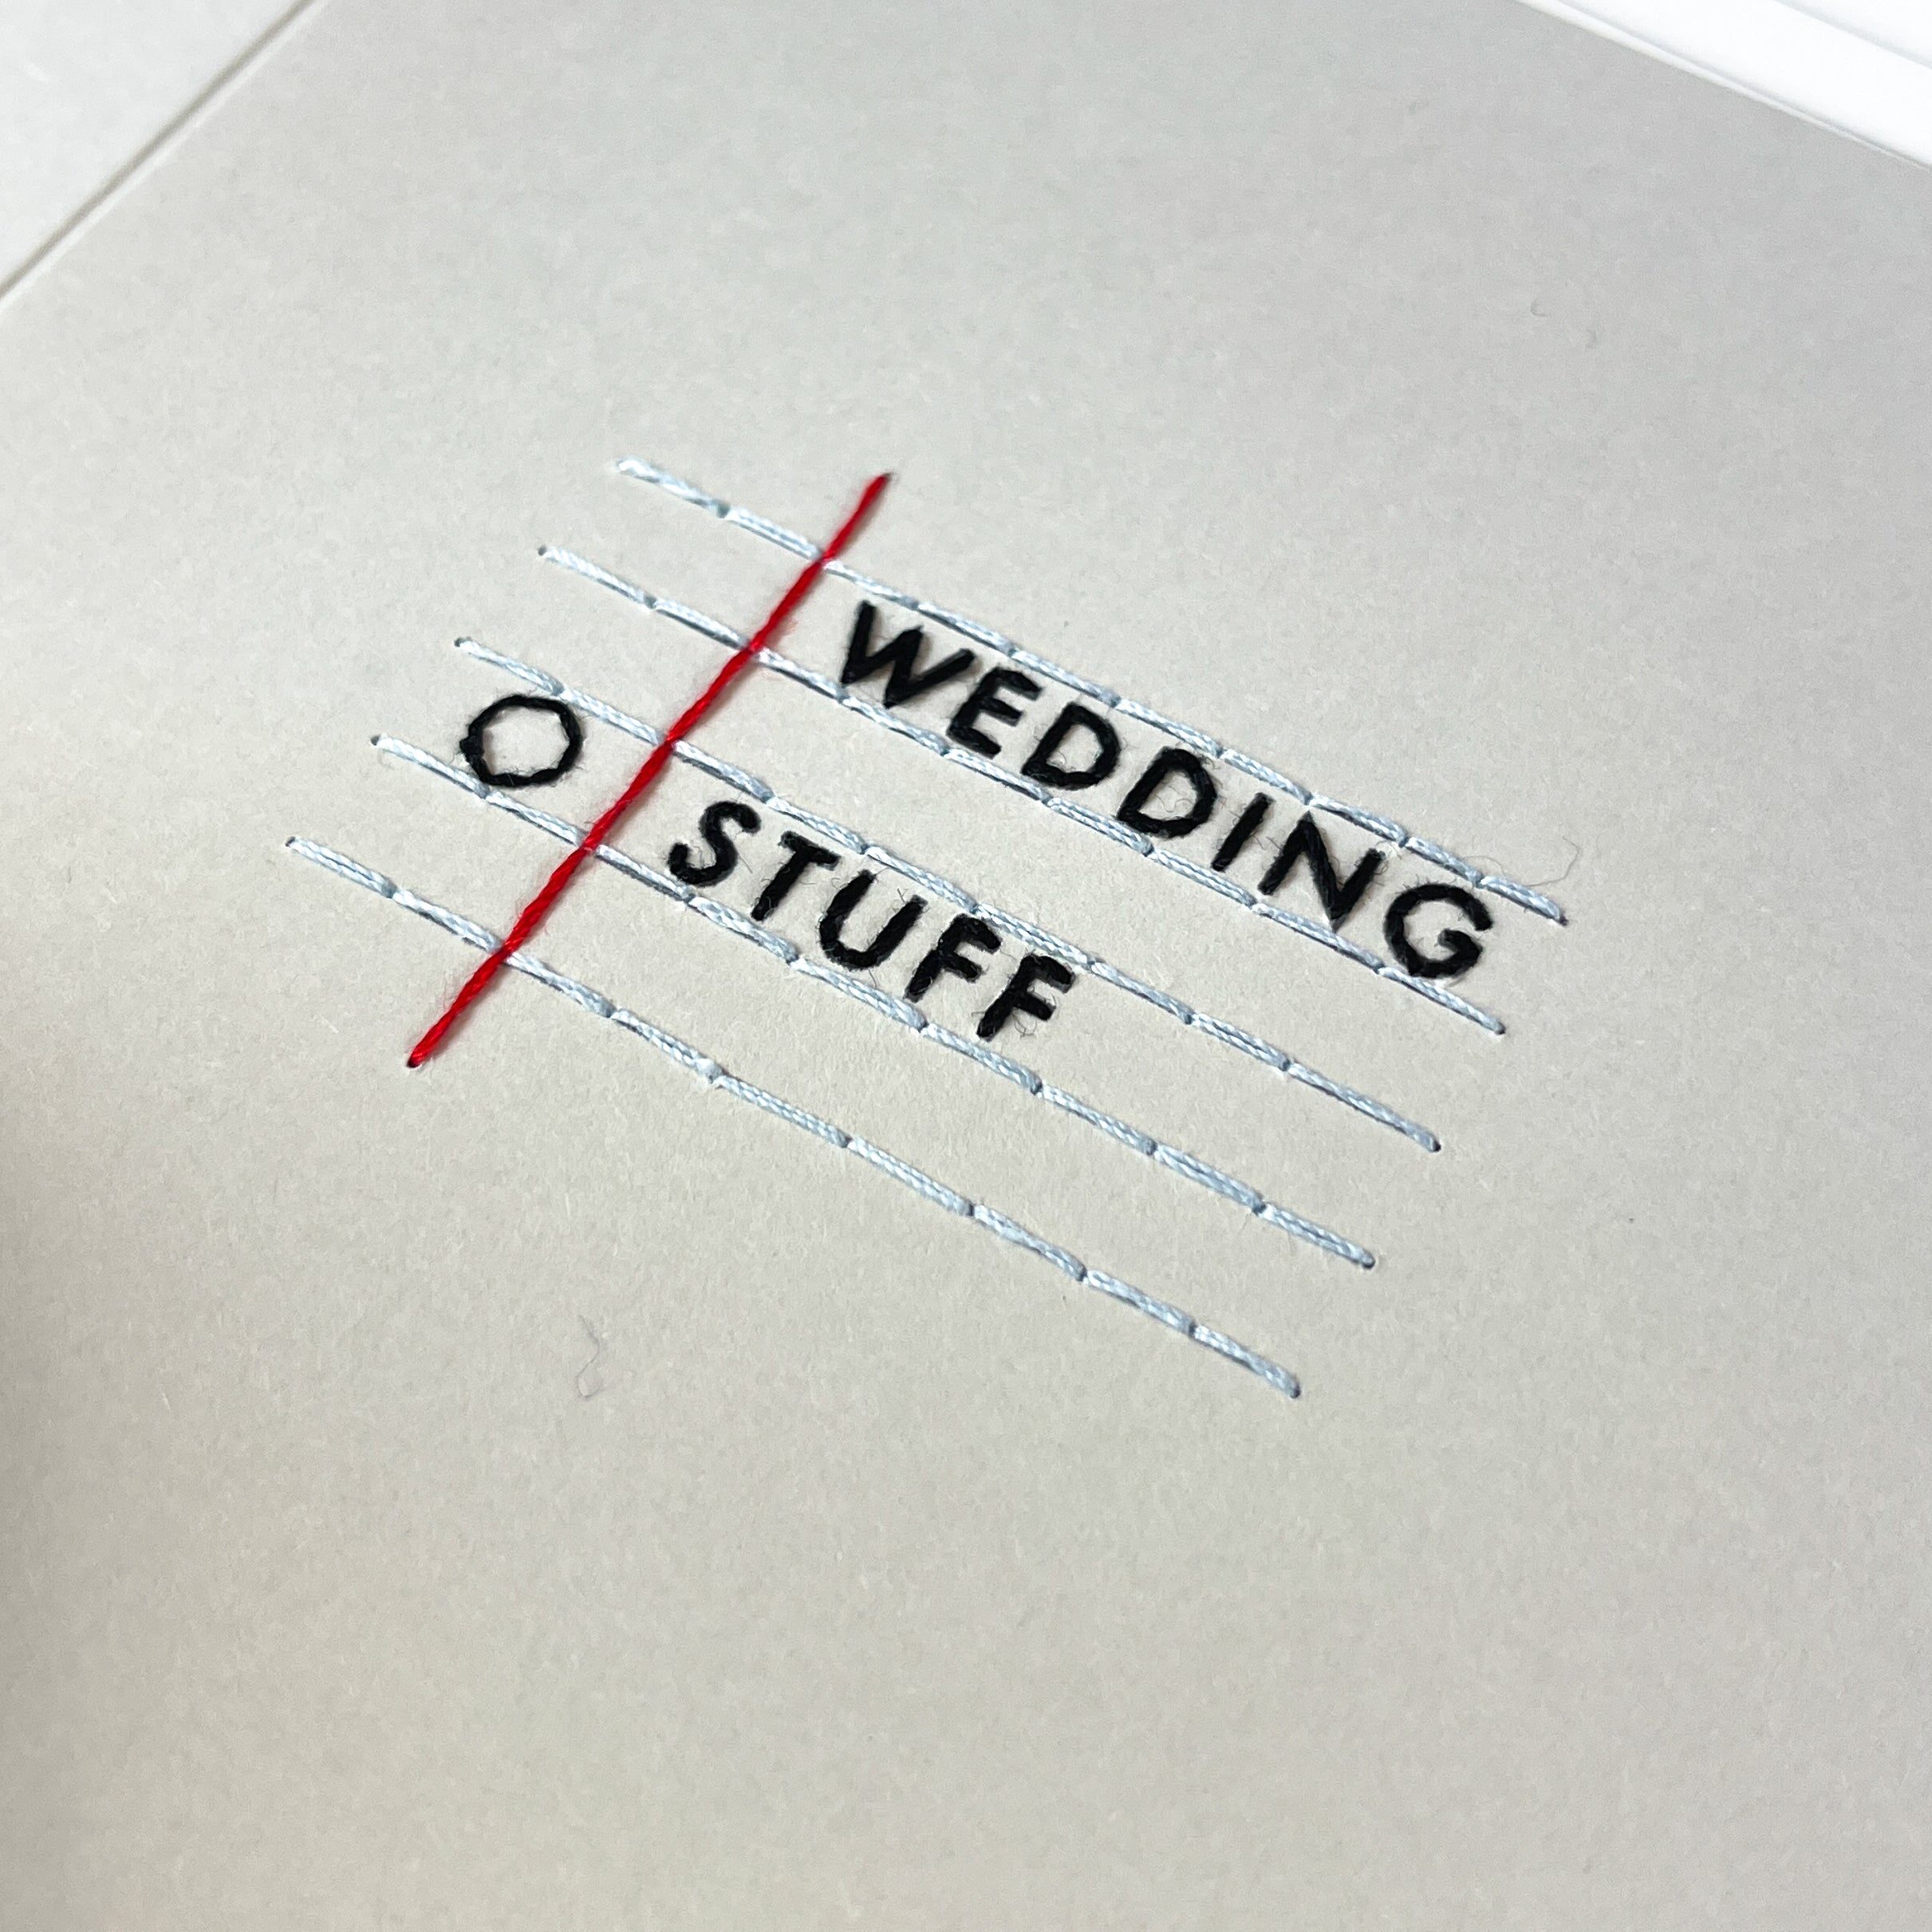 'Wedding Stuff' card